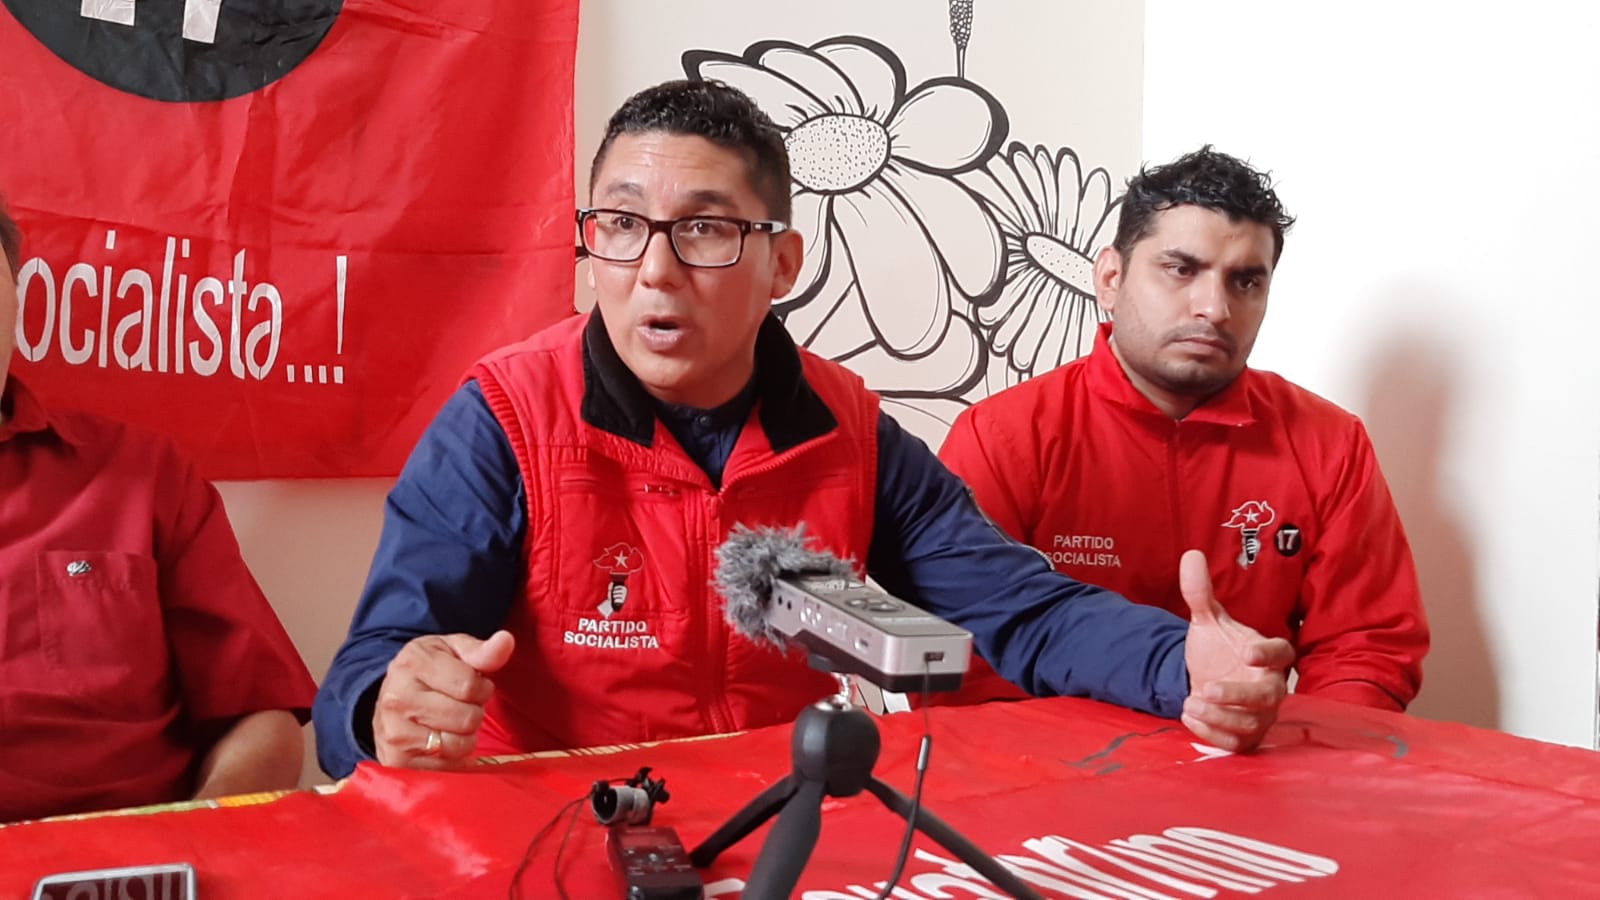 En este momento estás viendo El partido Socialista Ecuatoriano con sede en Zamora Chinchipe presenta sus candidatos